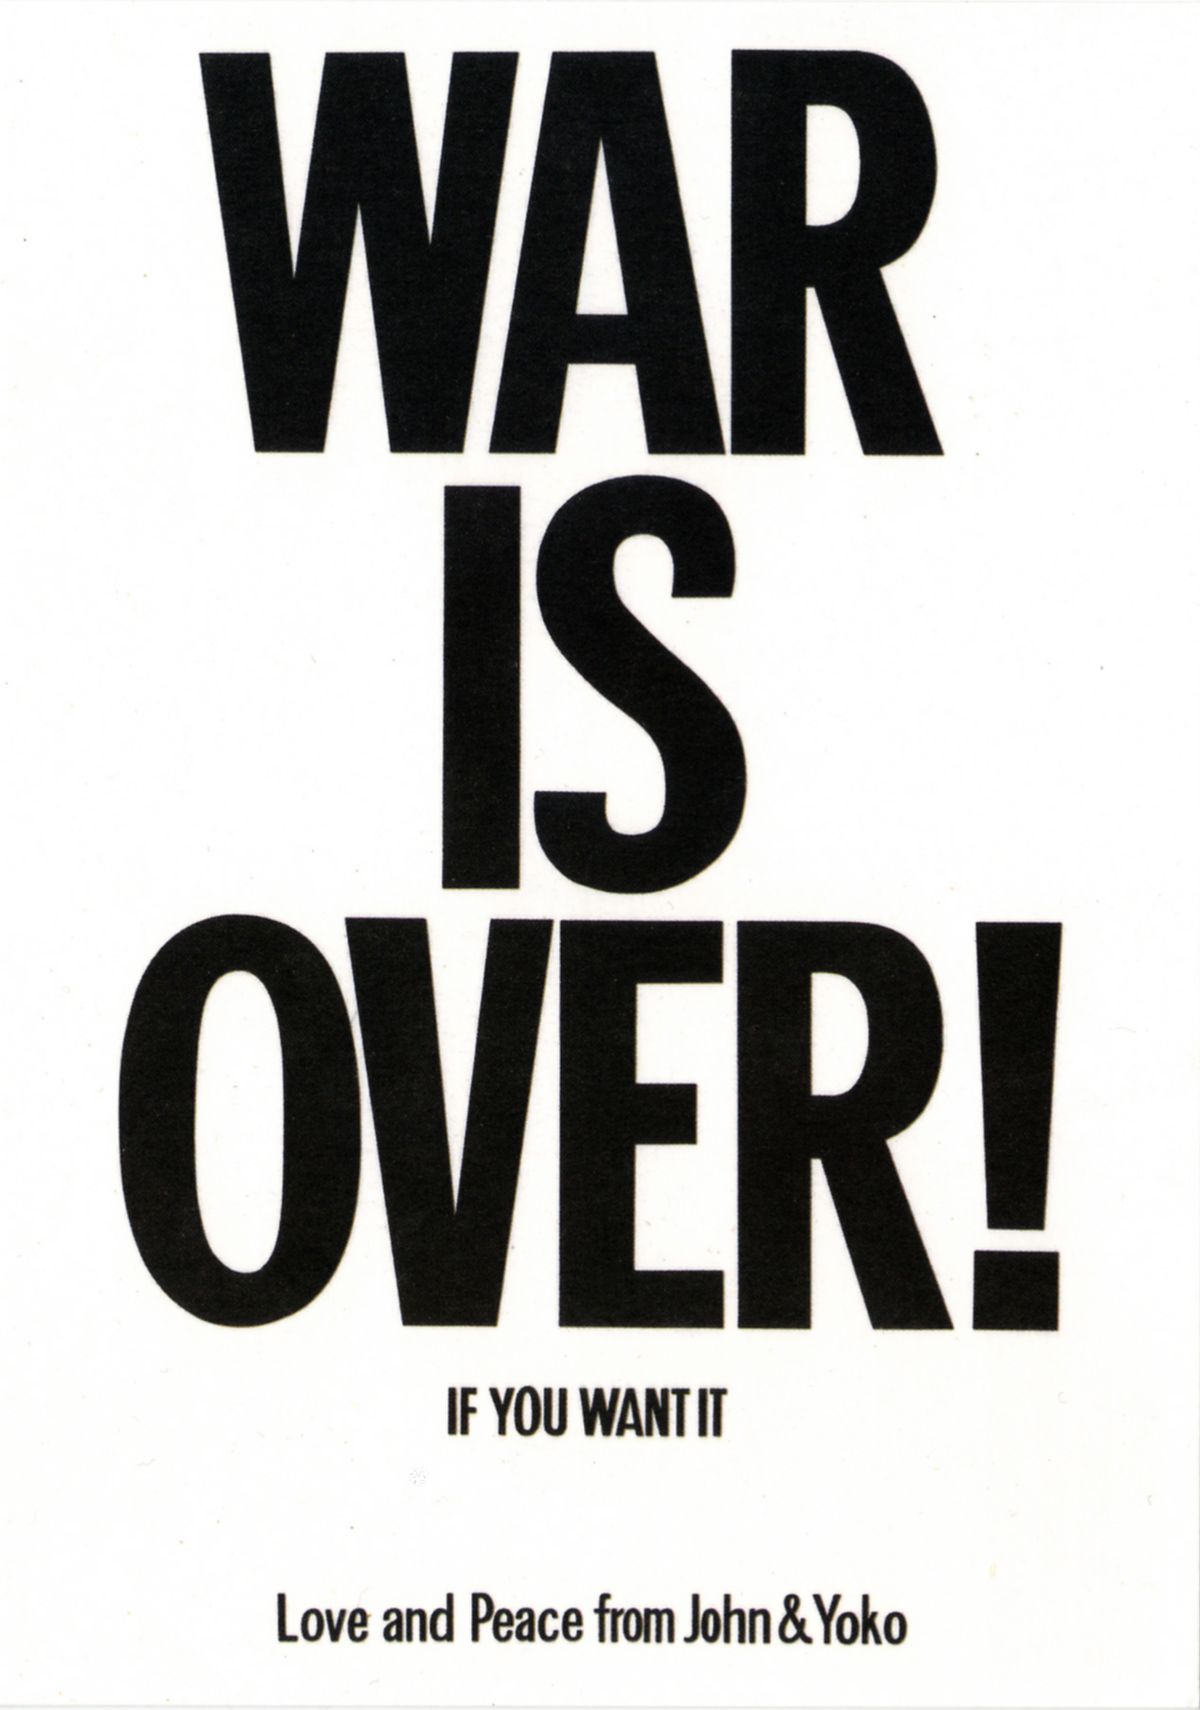 Yoko Ono et John Lennon, War is over! If you want it (Love and Peace from John & Yoko), poster original, 1969. © Yoko Ono